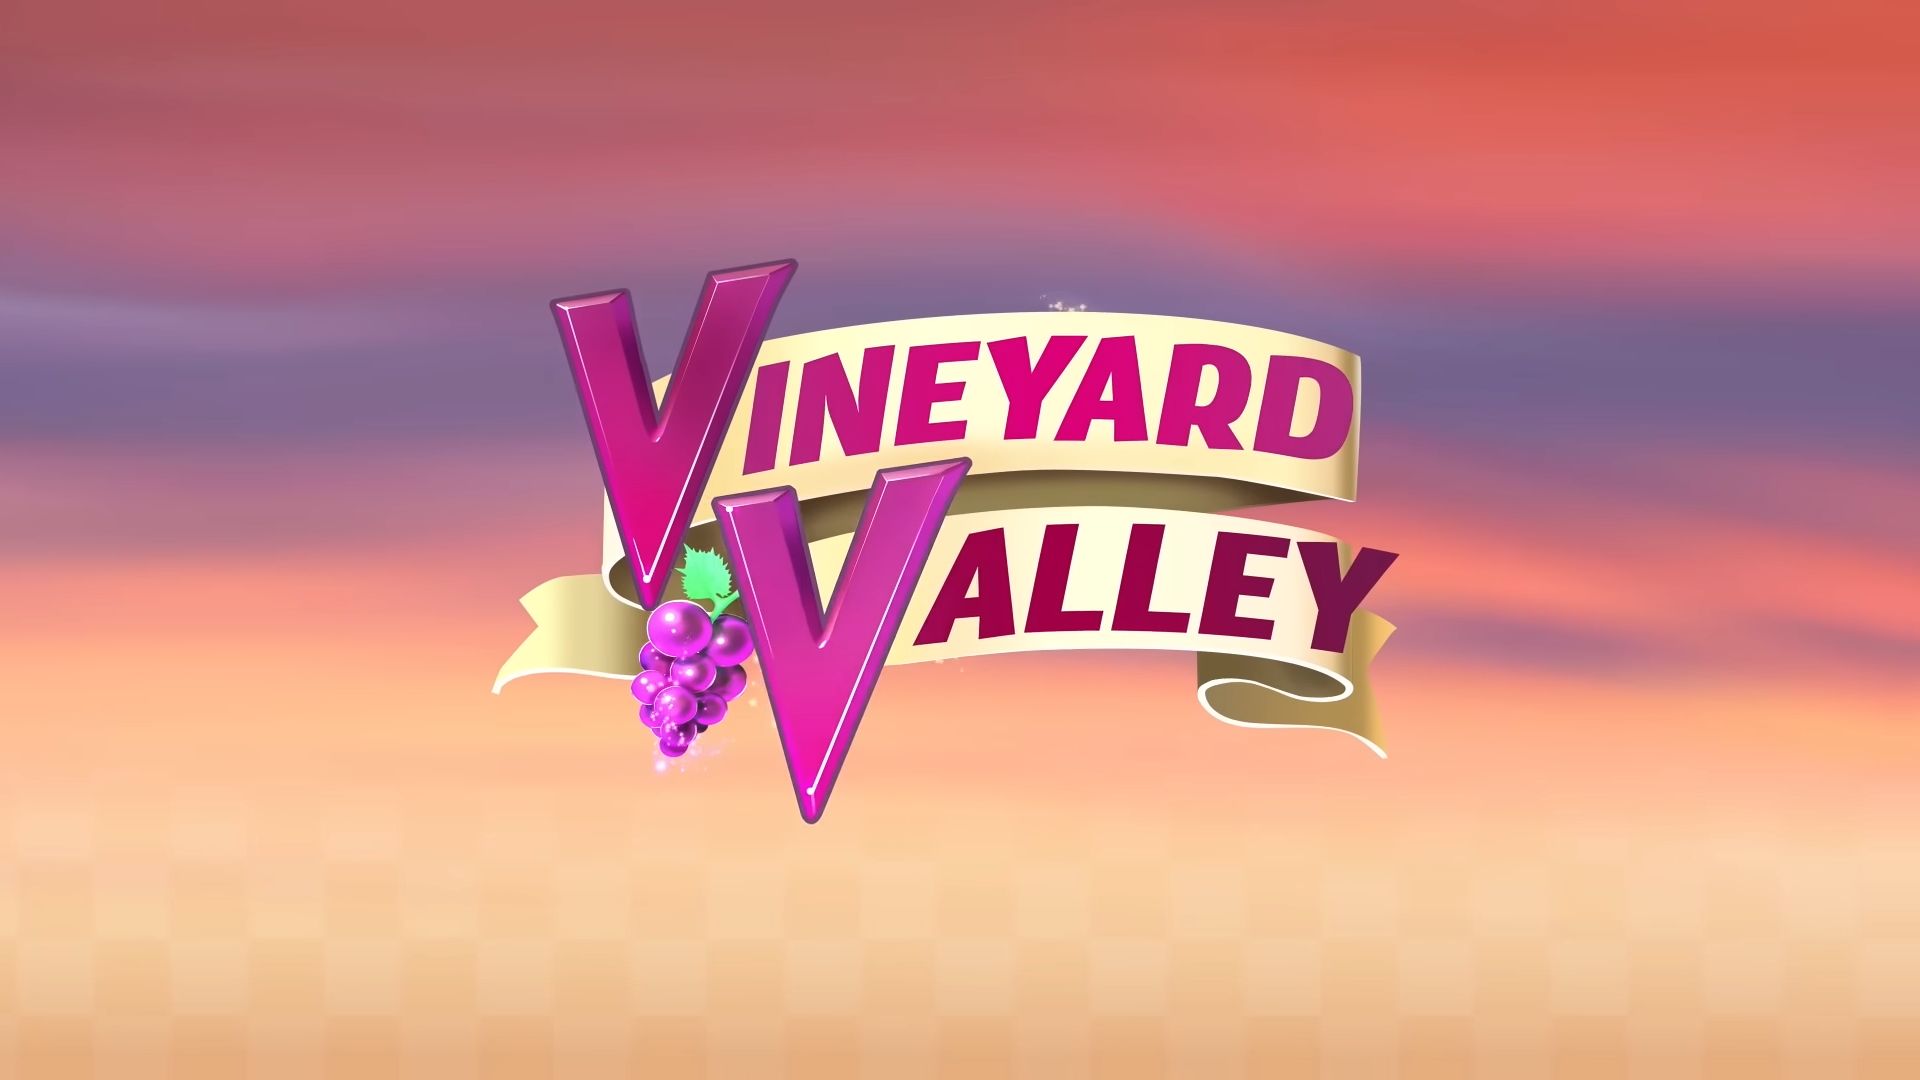 Vineyard Valley NETFLIX スクリーンショット1